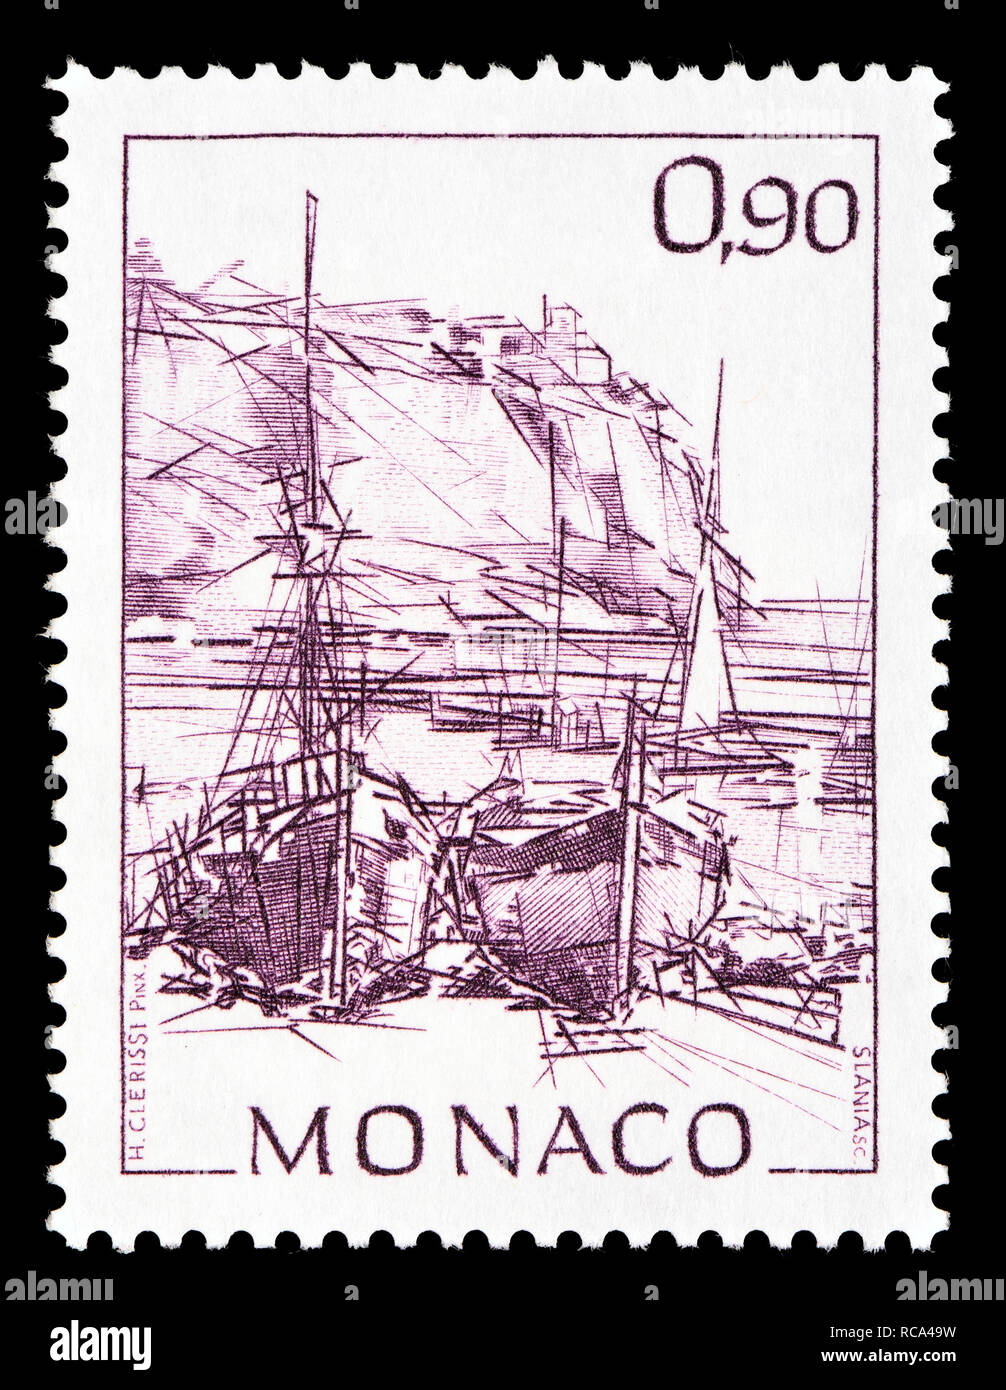 Monaco timbre-poste (1992) : les premières impressions de Monaco : série définitive des navires dans le port Banque D'Images